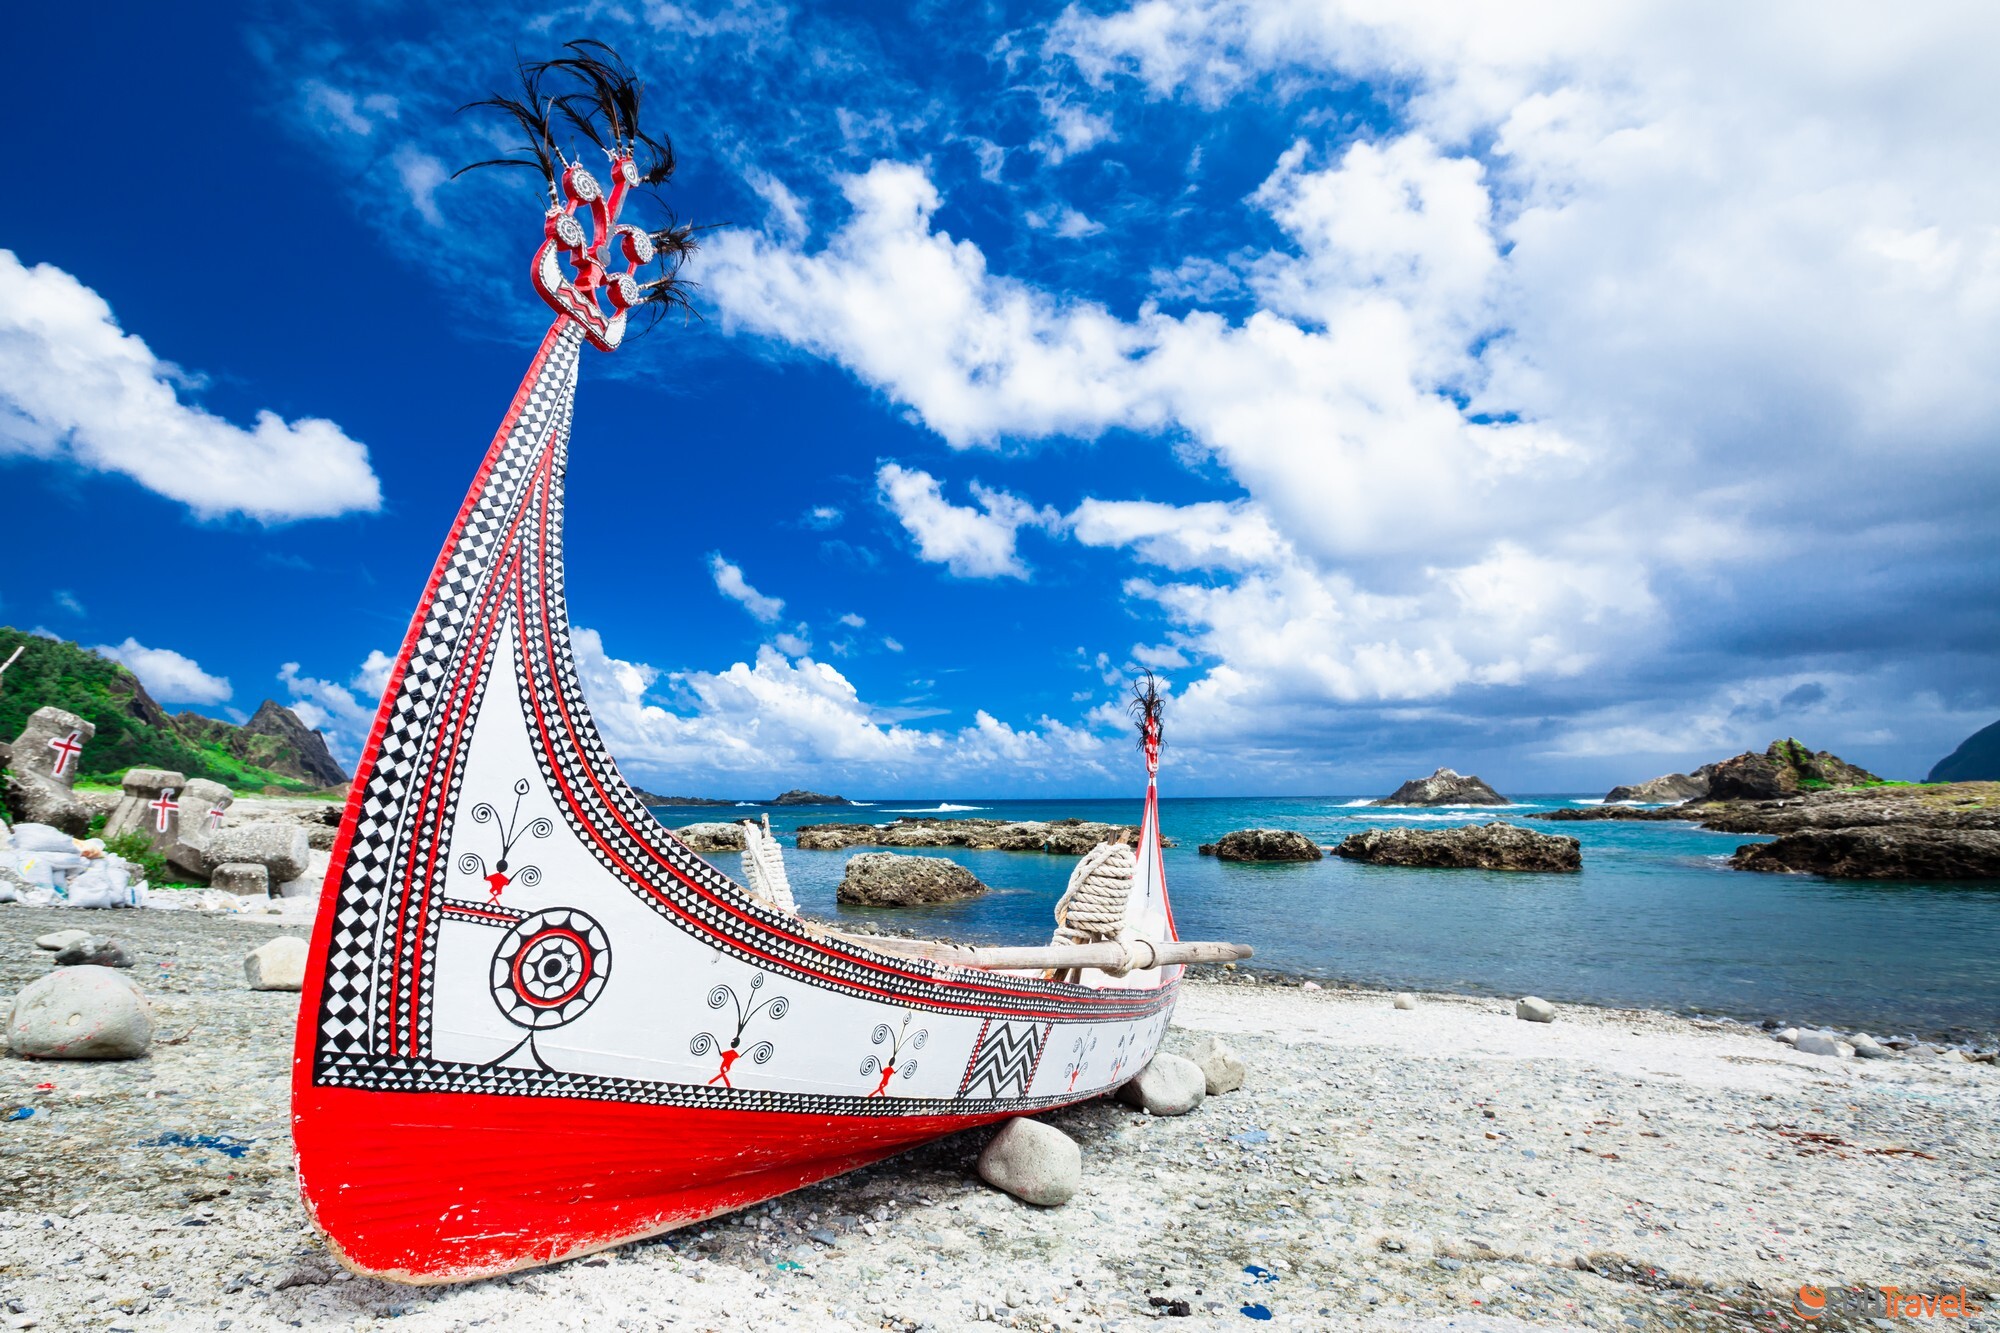 Barca tradizionale nell'isola di Lanyu. L'isola si trova nella parte orientale di Taiwan - Orchid Island